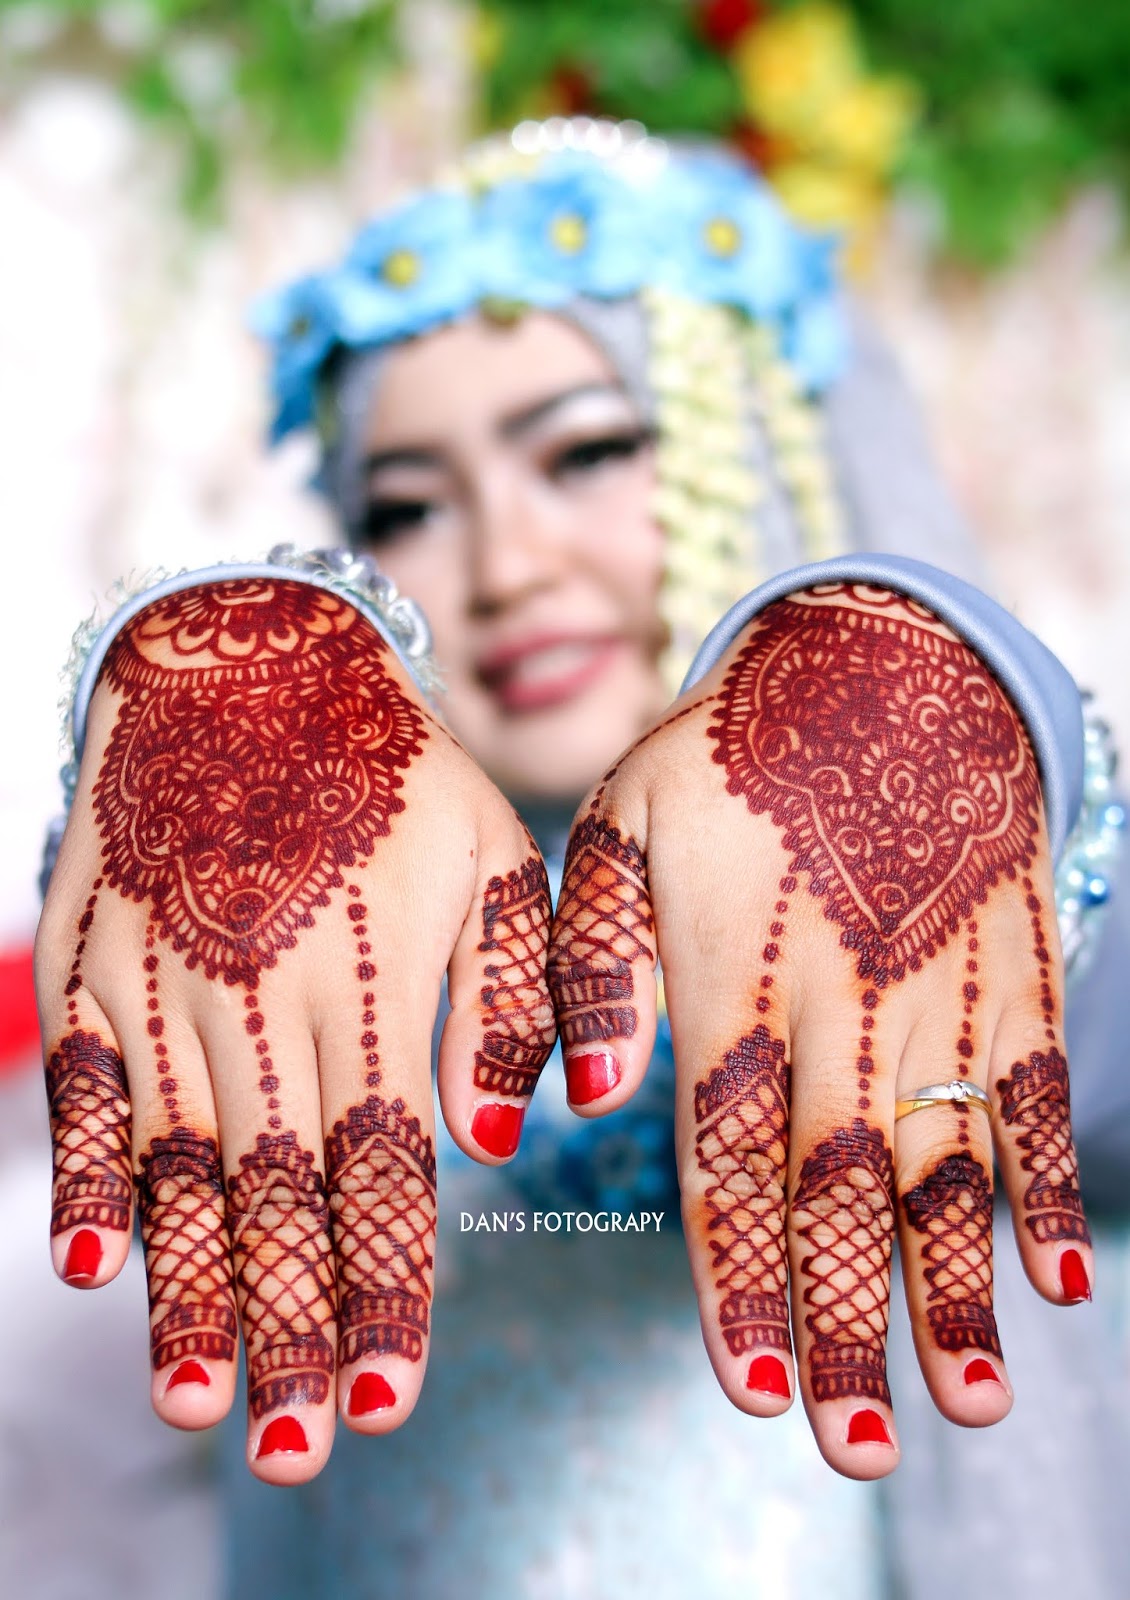 Daftar Harga Paket Wedding Murah Tasikmalaya 2019 HARGA PAKET FOTO